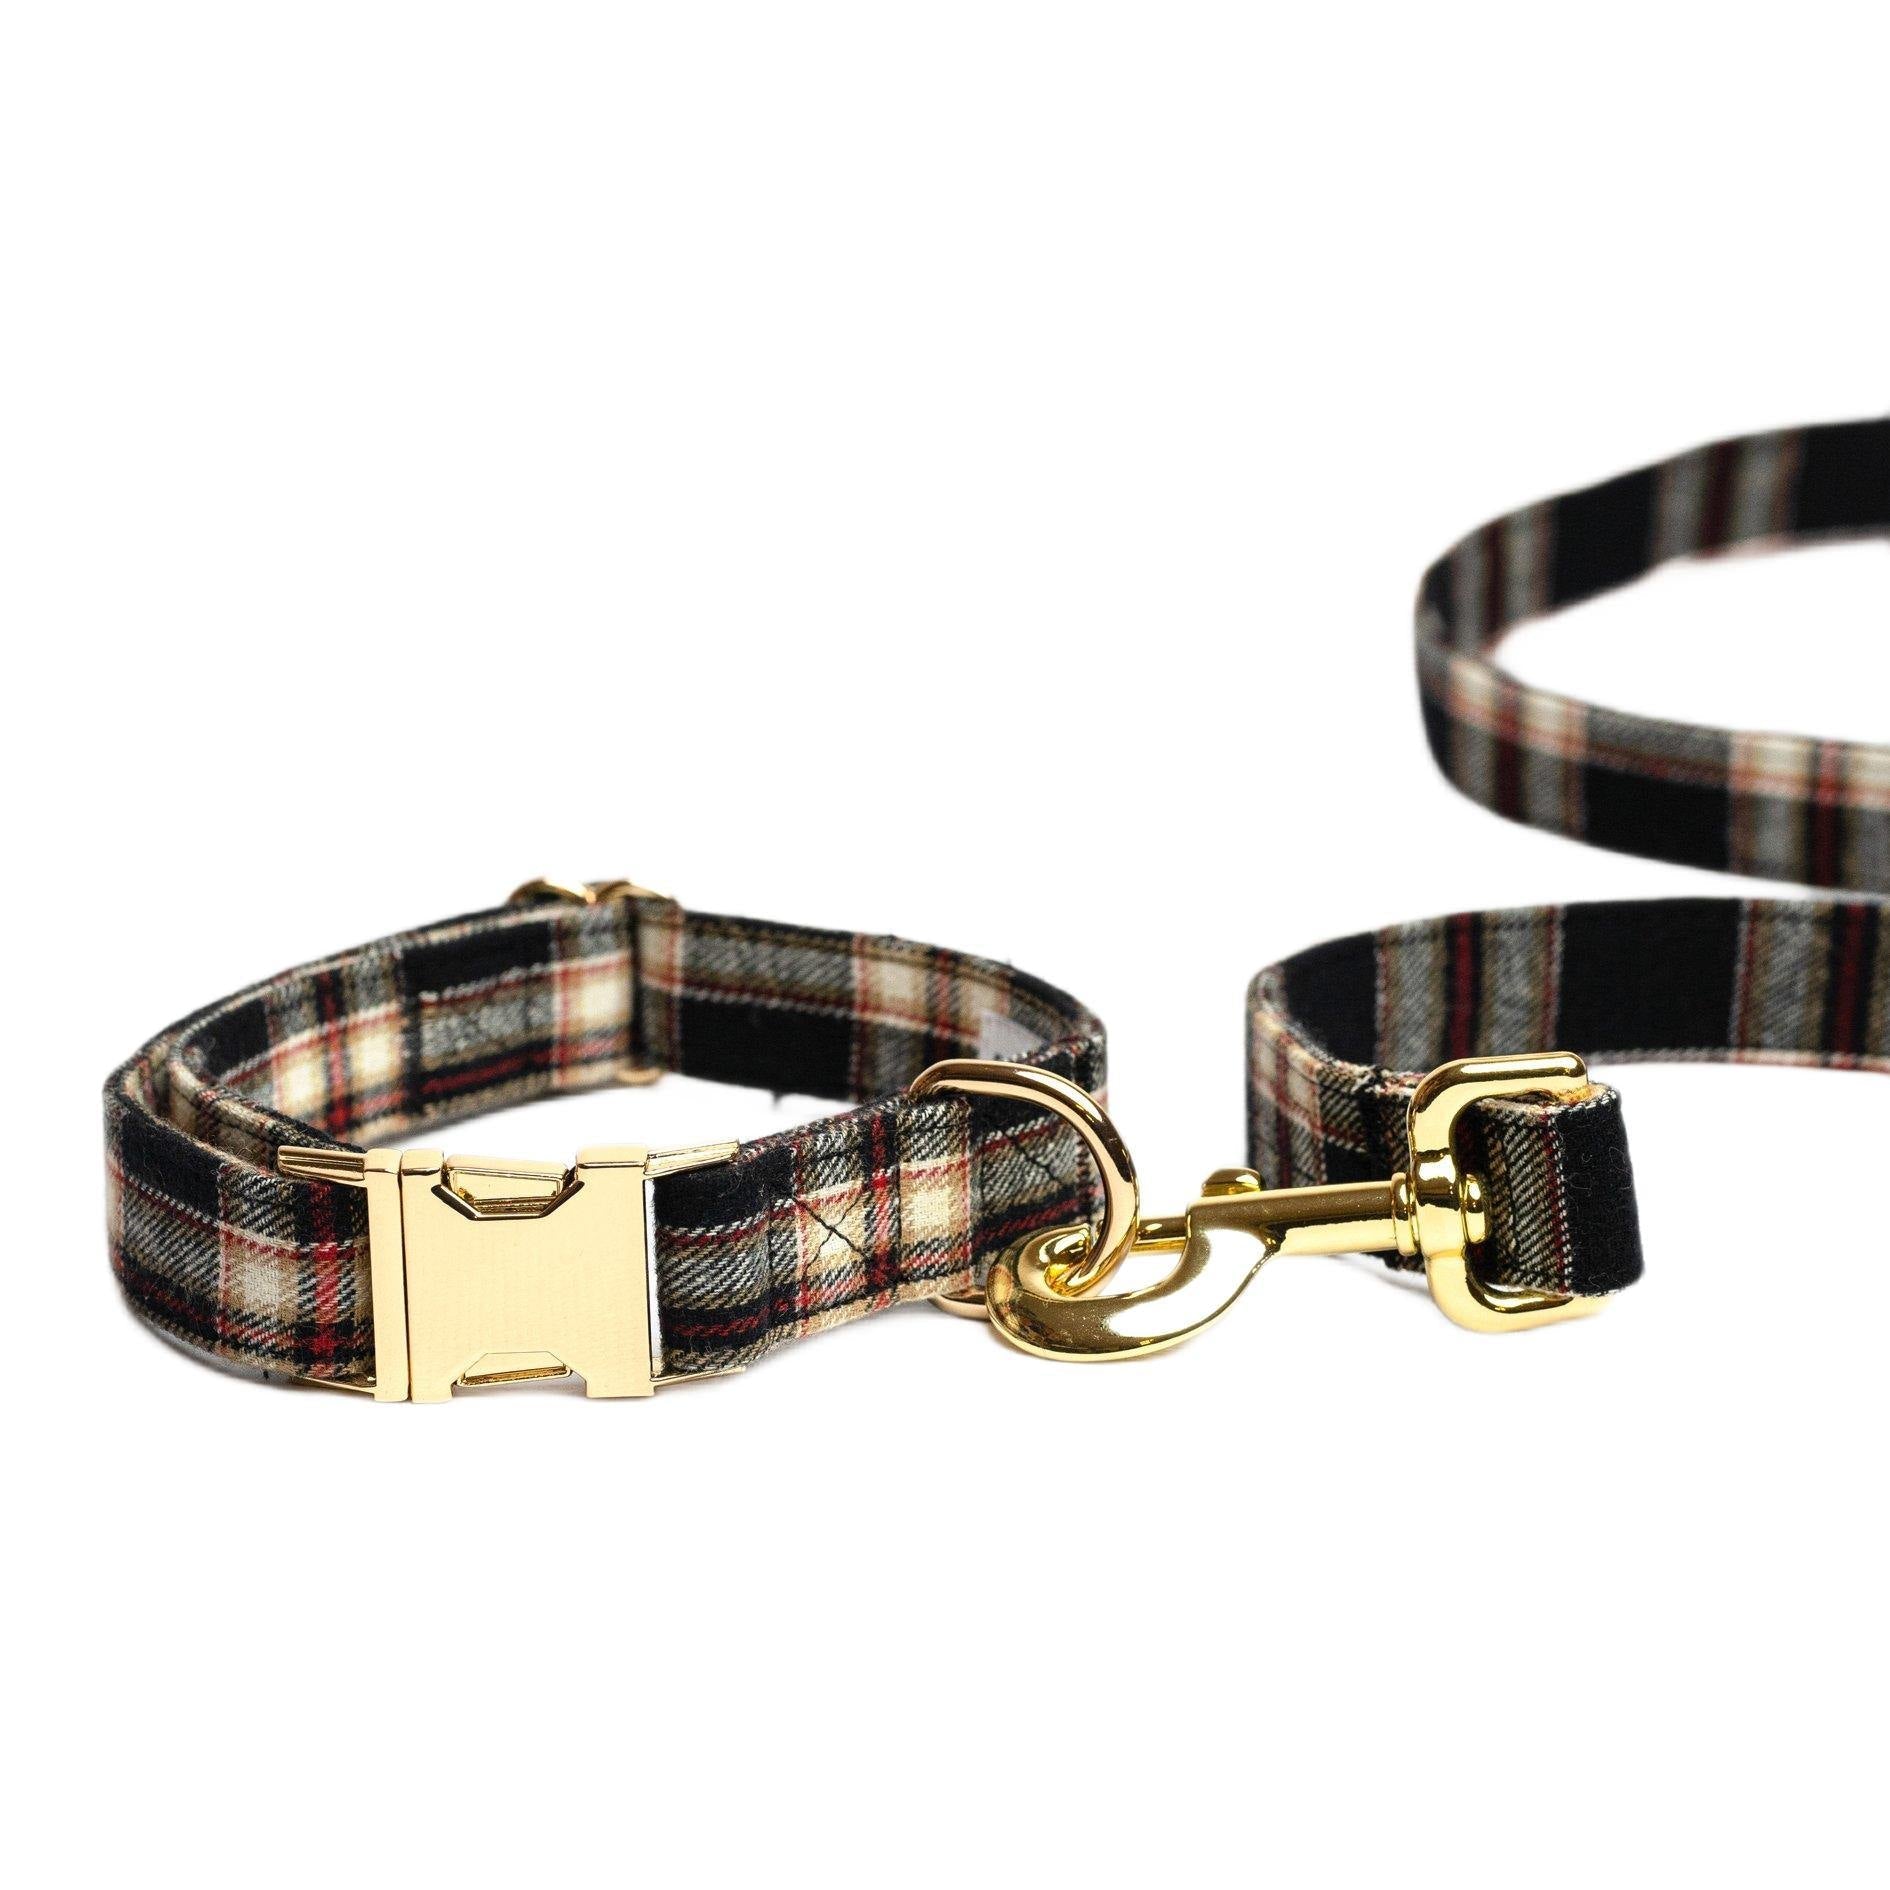 Pet Peterson set - London - Tienda online collares y accesorios de diseño para perros Dog Models - Pet Peterson